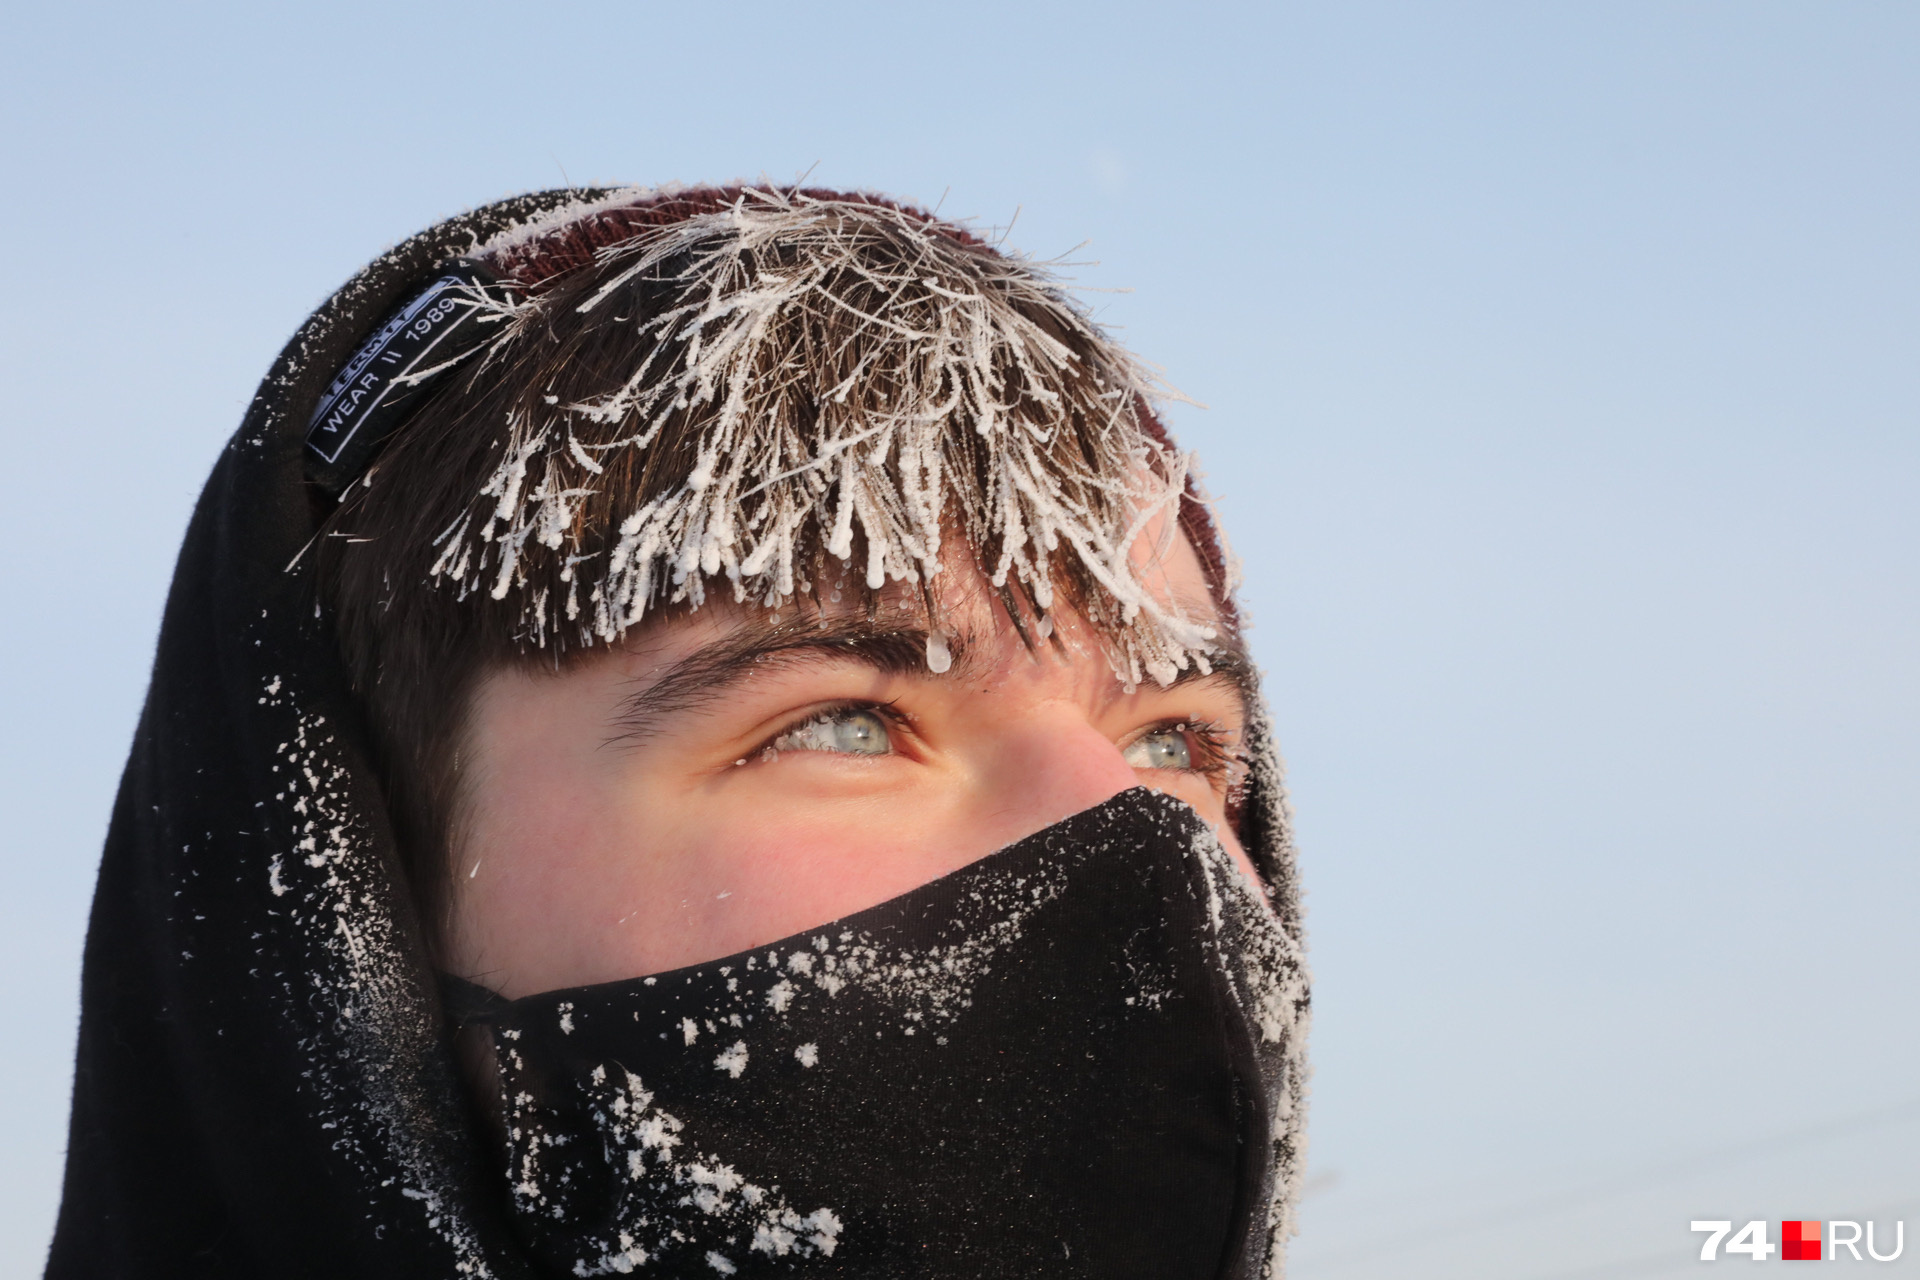 Городам Урала сегодня не повезло с погодой: в Челябинске столбик термометра осел в районе -25 градусов